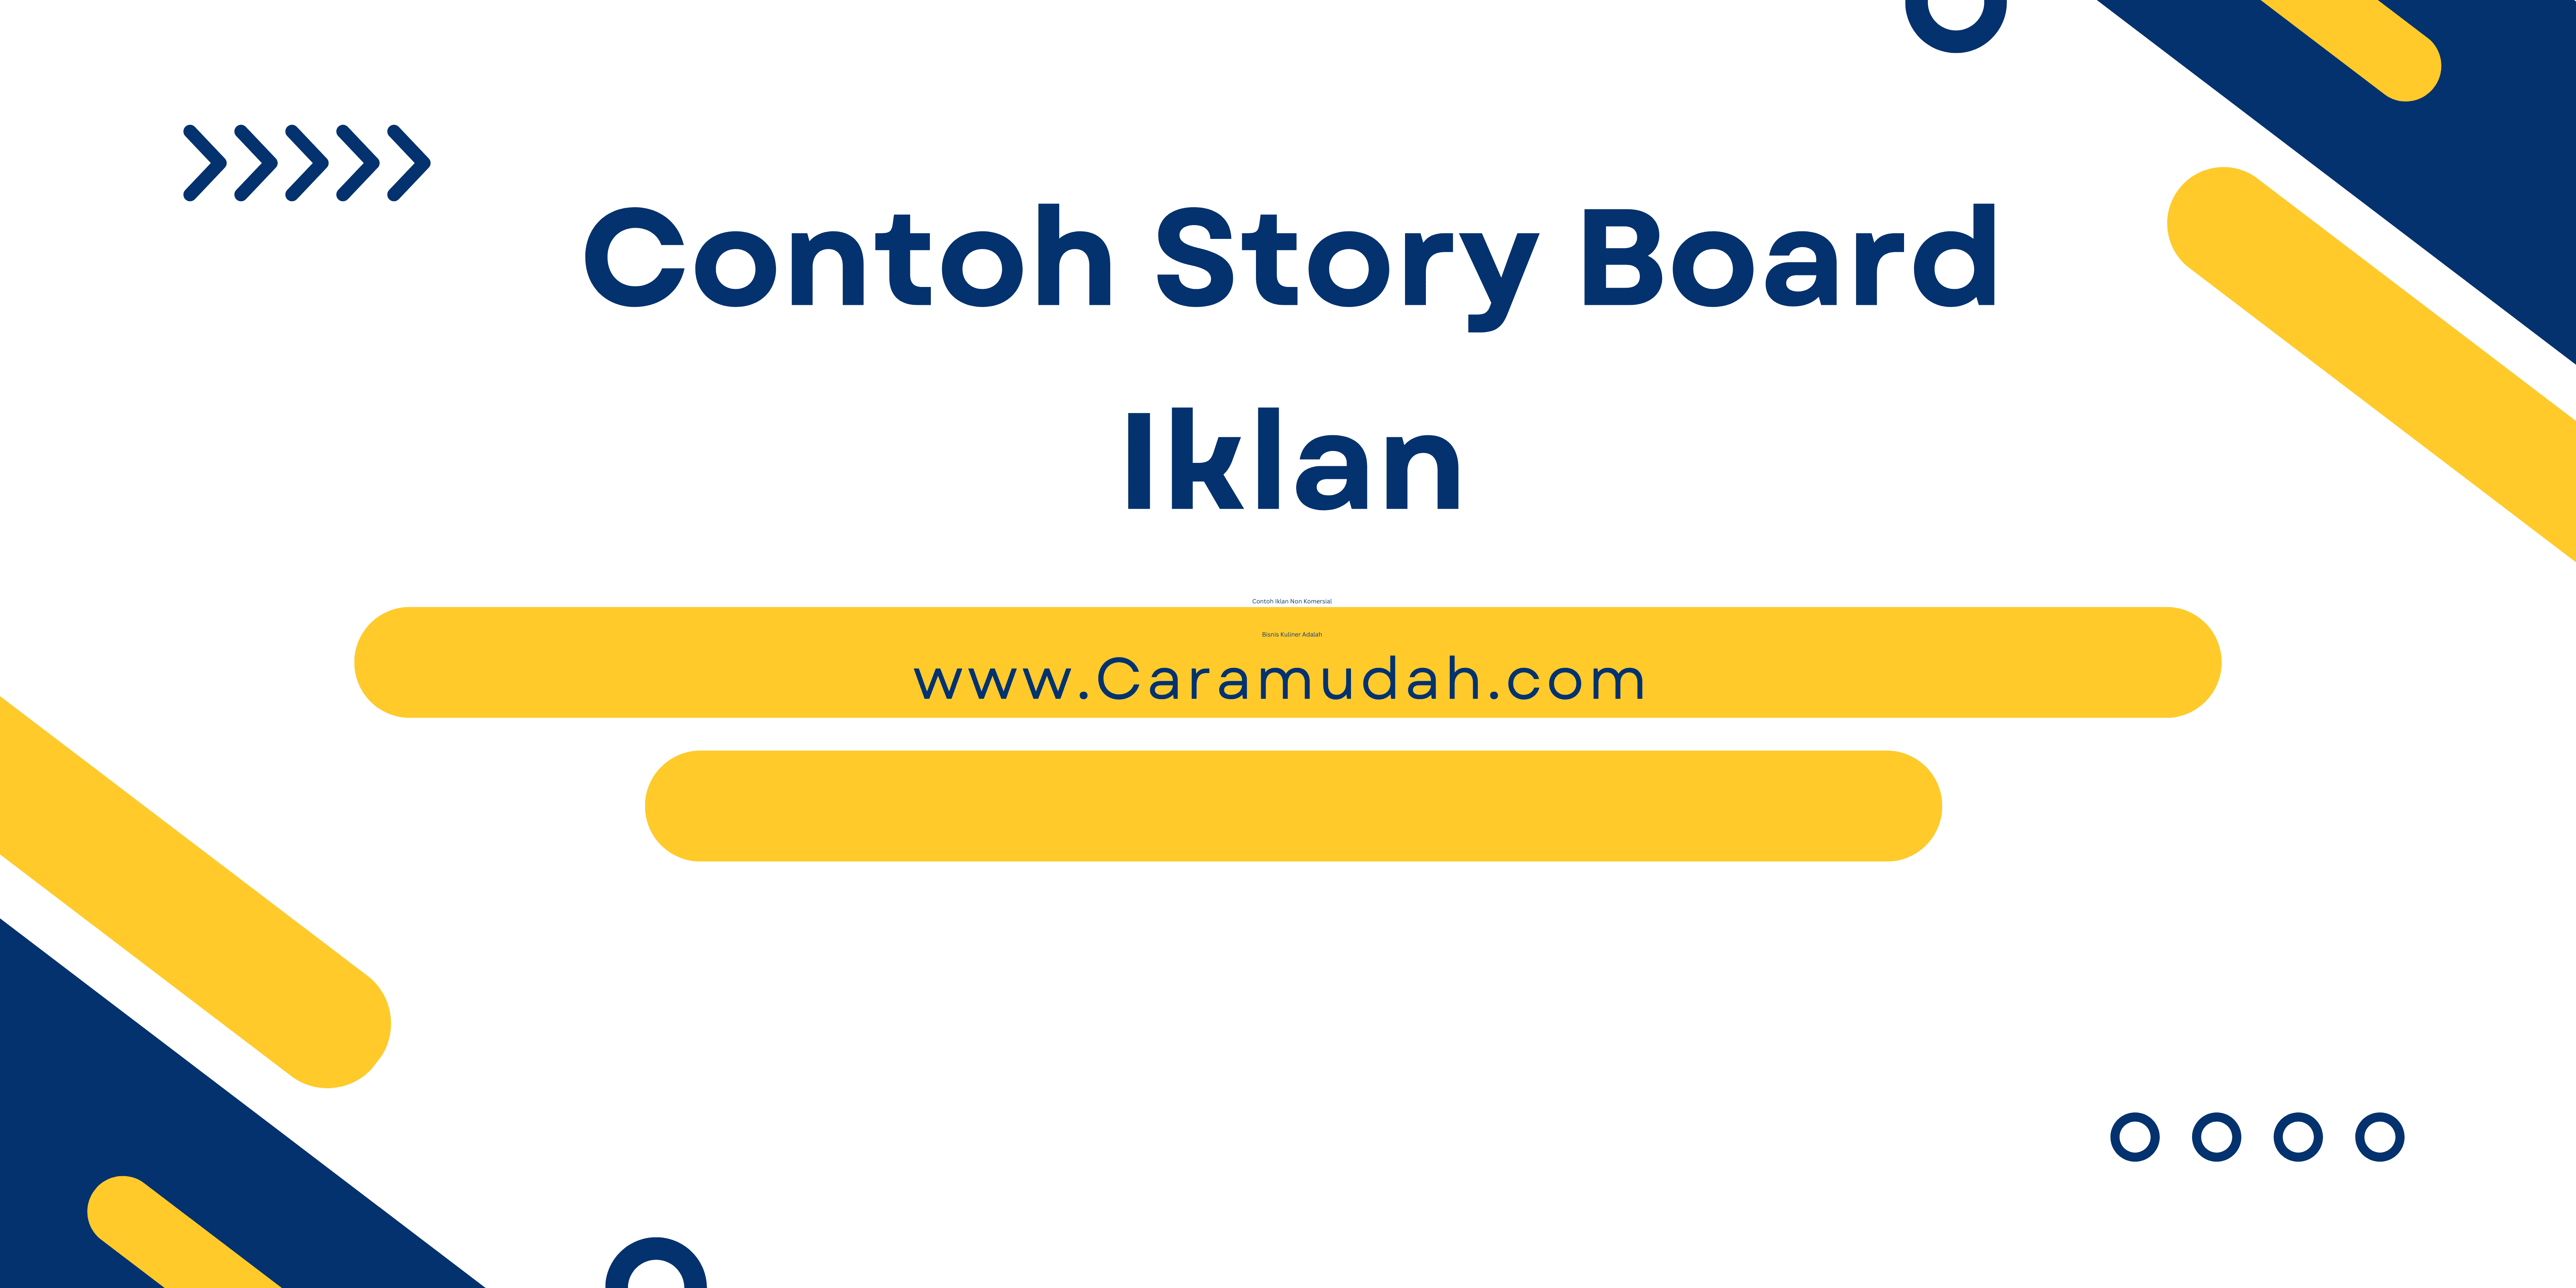 Contoh Story Board Iklan